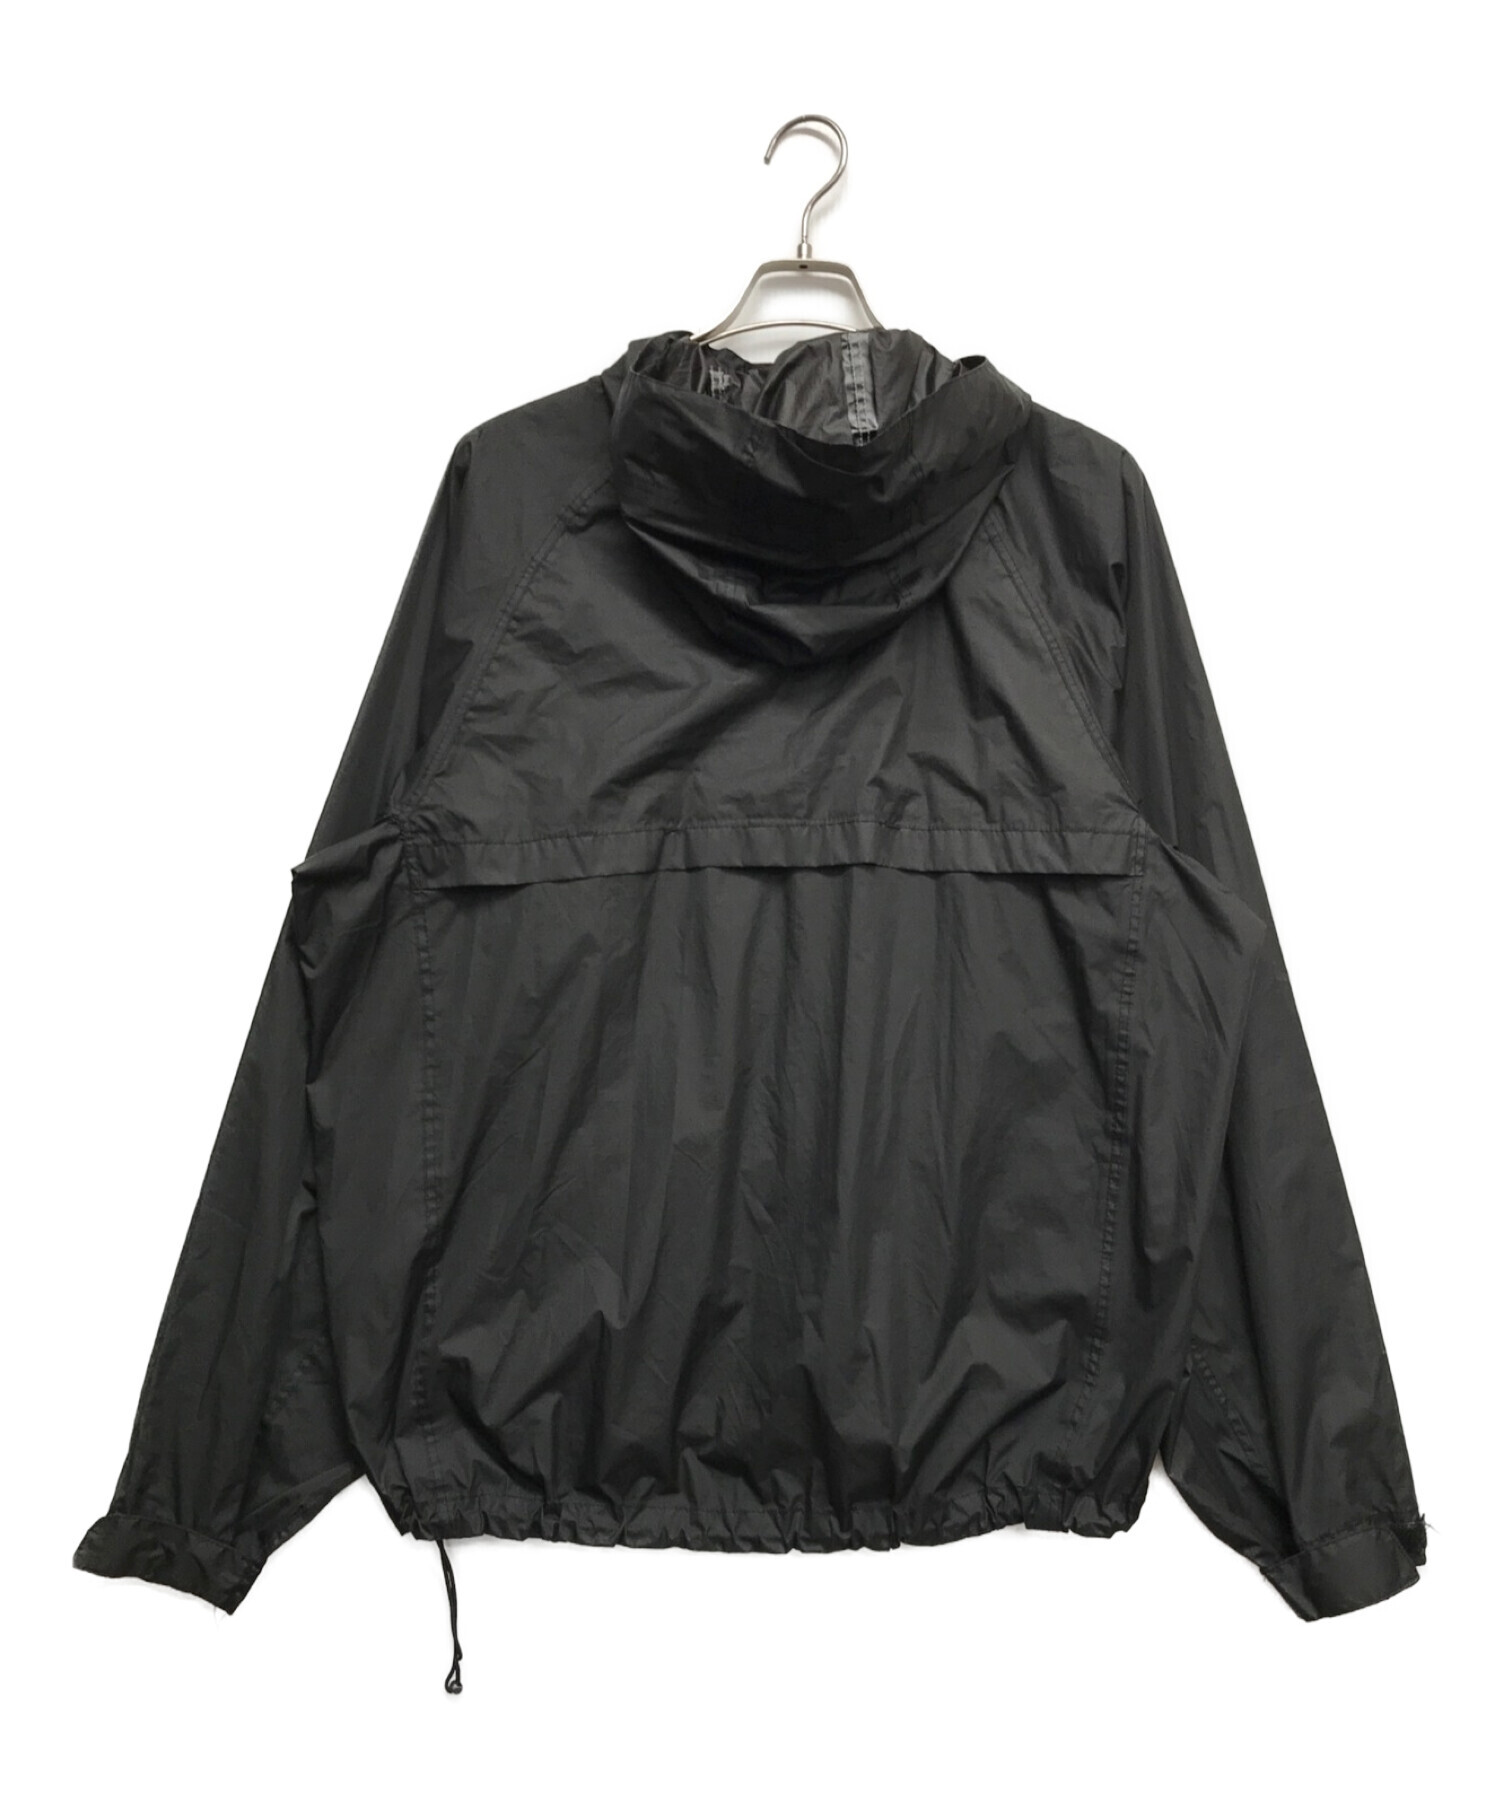 ROTHCO (ロスコ) ナイロンジャケット ブラック サイズ:L